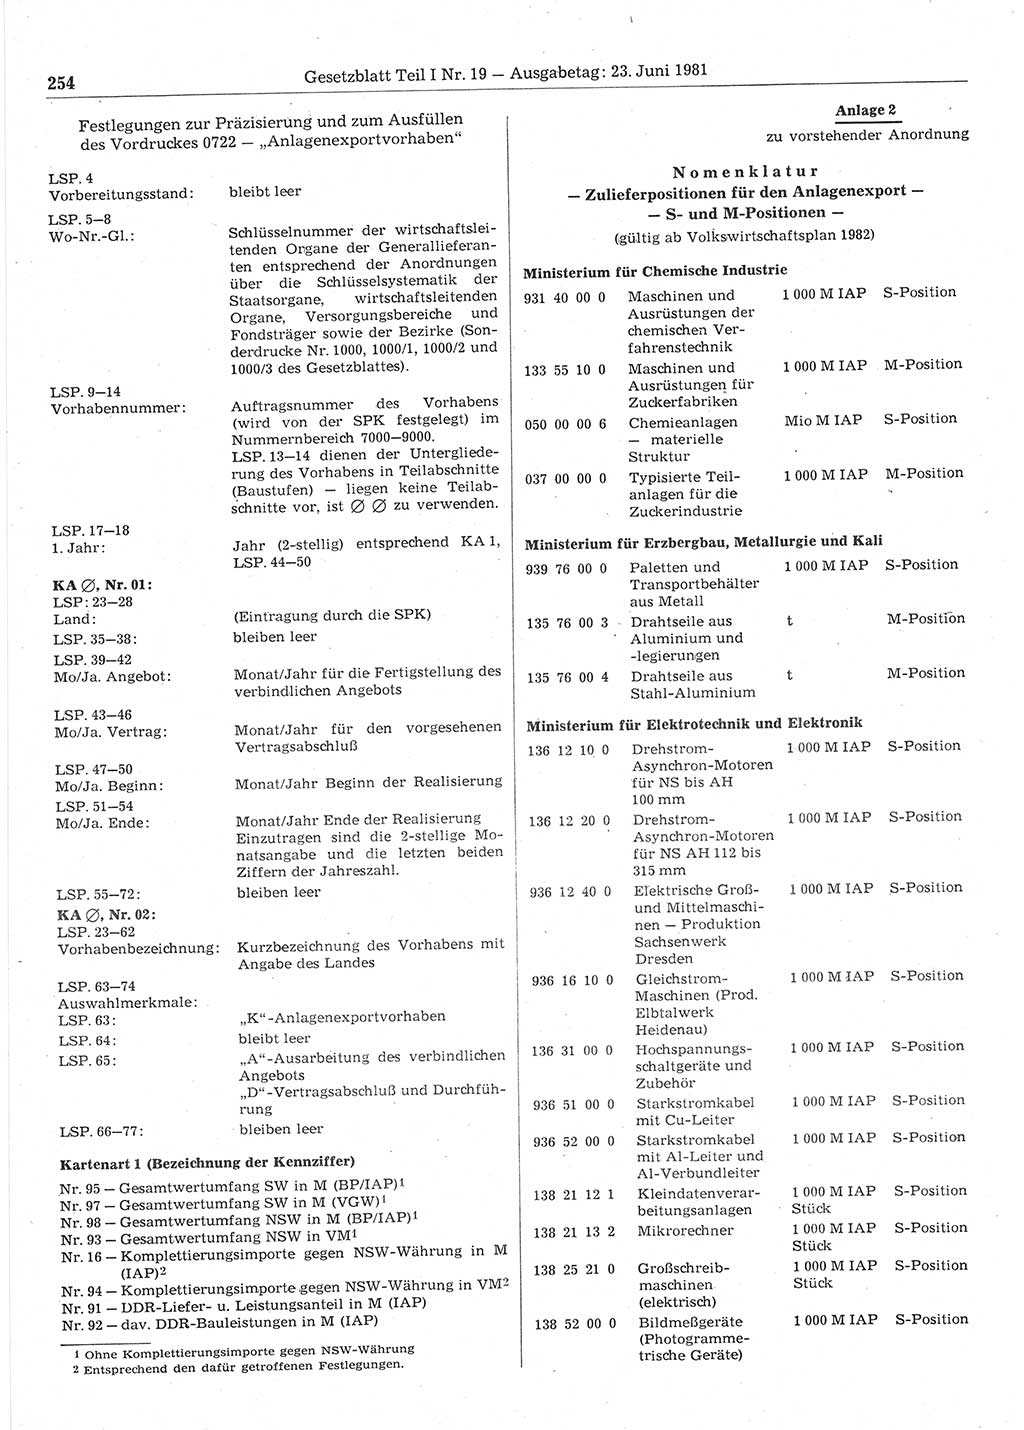 Gesetzblatt (GBl.) der Deutschen Demokratischen Republik (DDR) Teil Ⅰ 1981, Seite 254 (GBl. DDR Ⅰ 1981, S. 254)